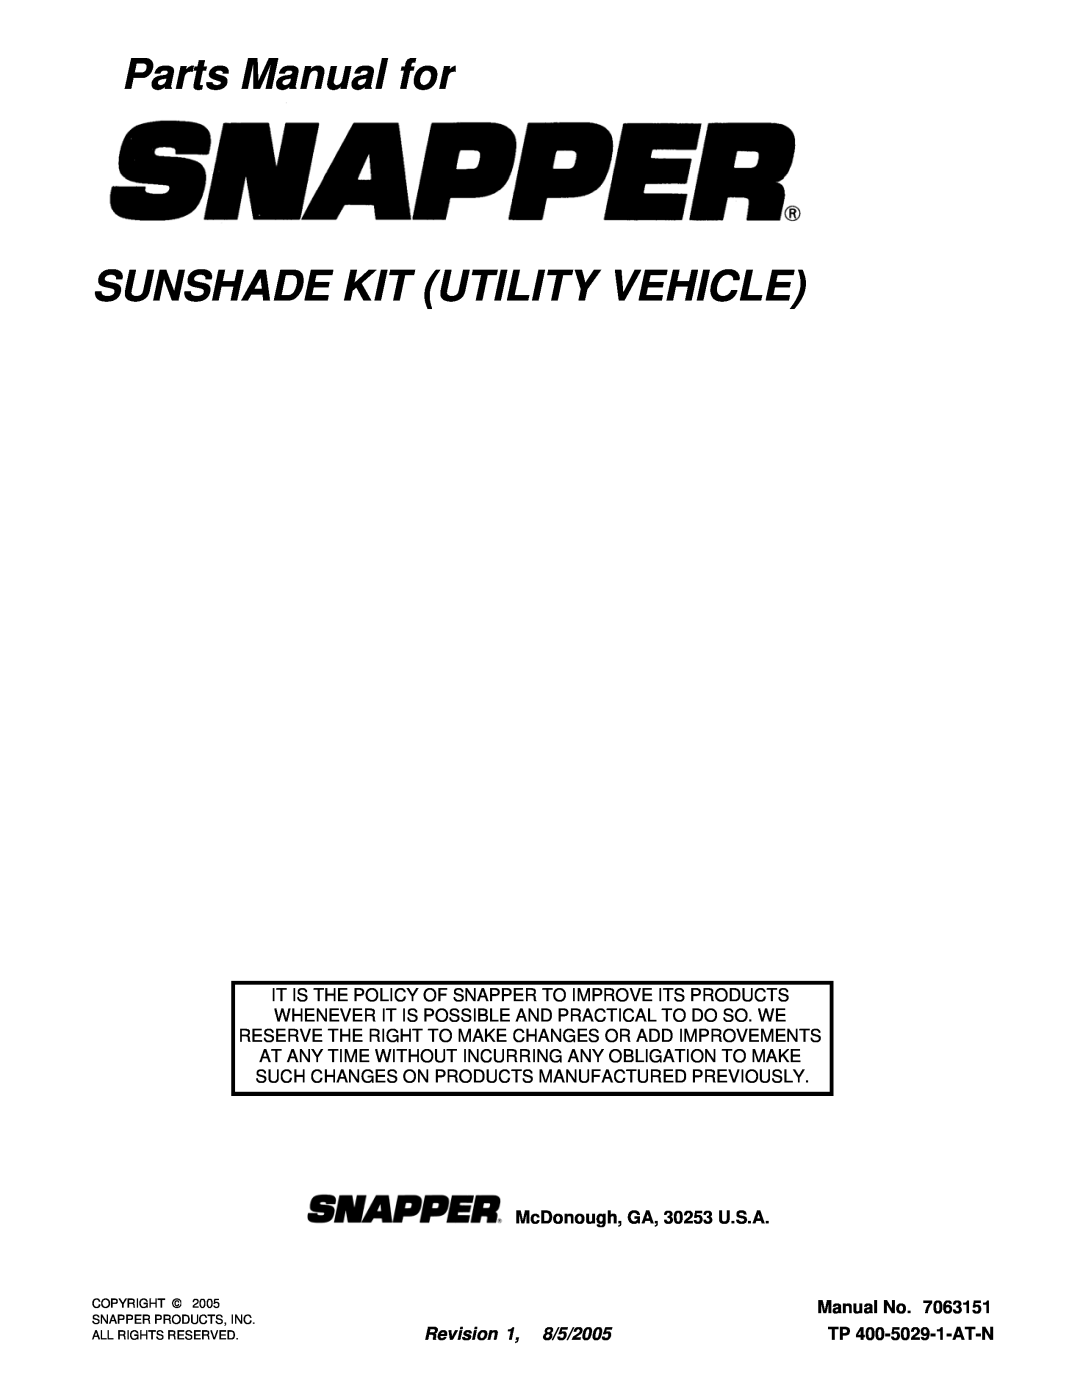 Snapper 63151 Parts Manual for SUNSHADE KIT UTILITY VEHICLE, McDonough, GA, 30253 U.S.A, Manual No, Revision 1, 8/5/2005 